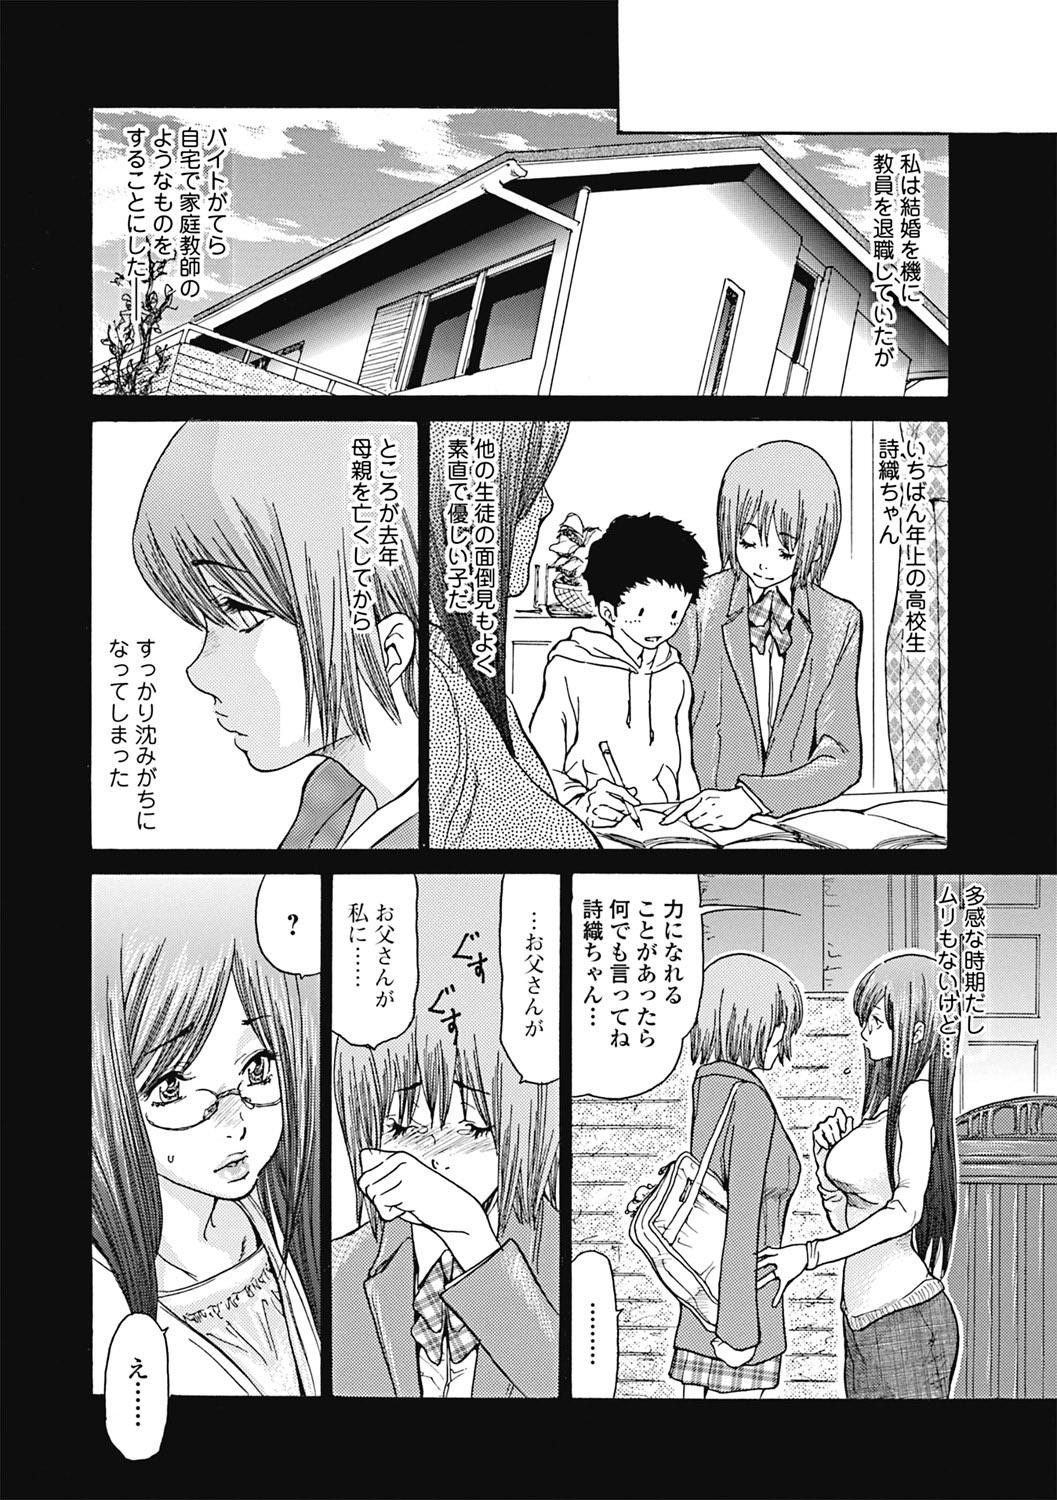 Threeway Hitozuma o Mawasu 8-tsu no Houhou Mofos - Page 5